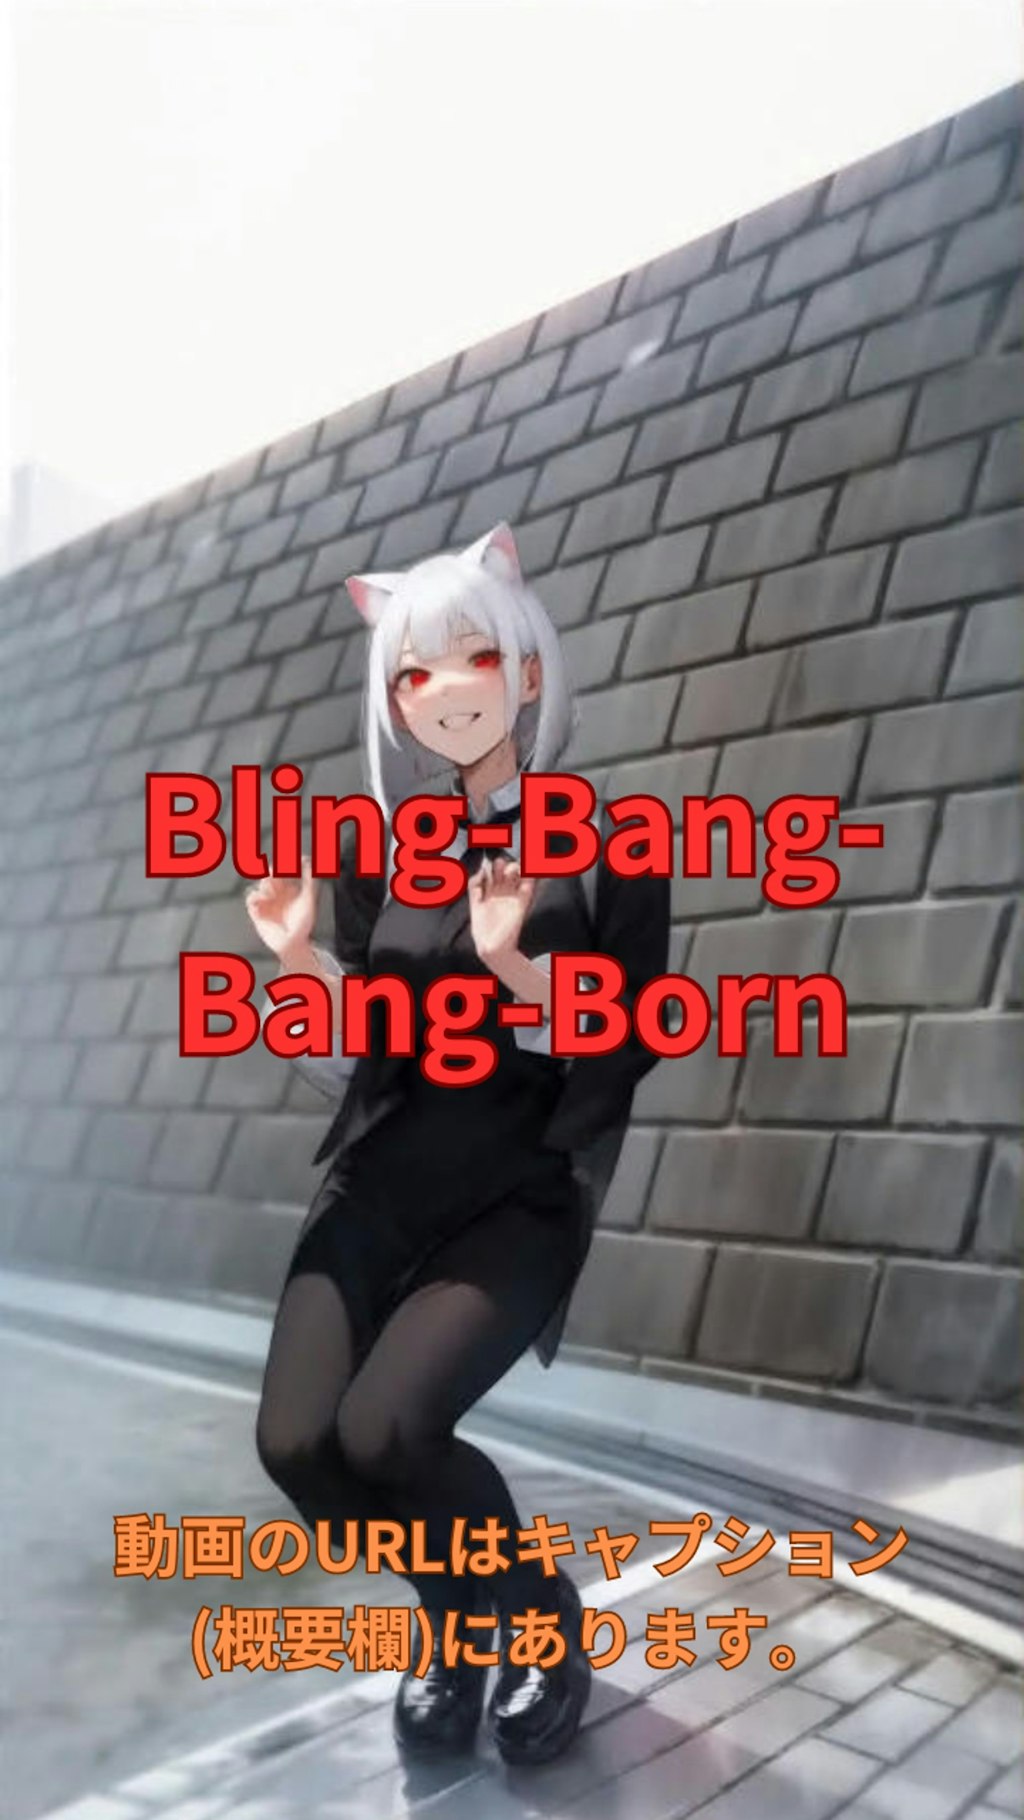 【動画】「Bling-Bang-Bang-Born」を踊ってみた6【flower26yearsold(ひな) 様】【めんたるさん】